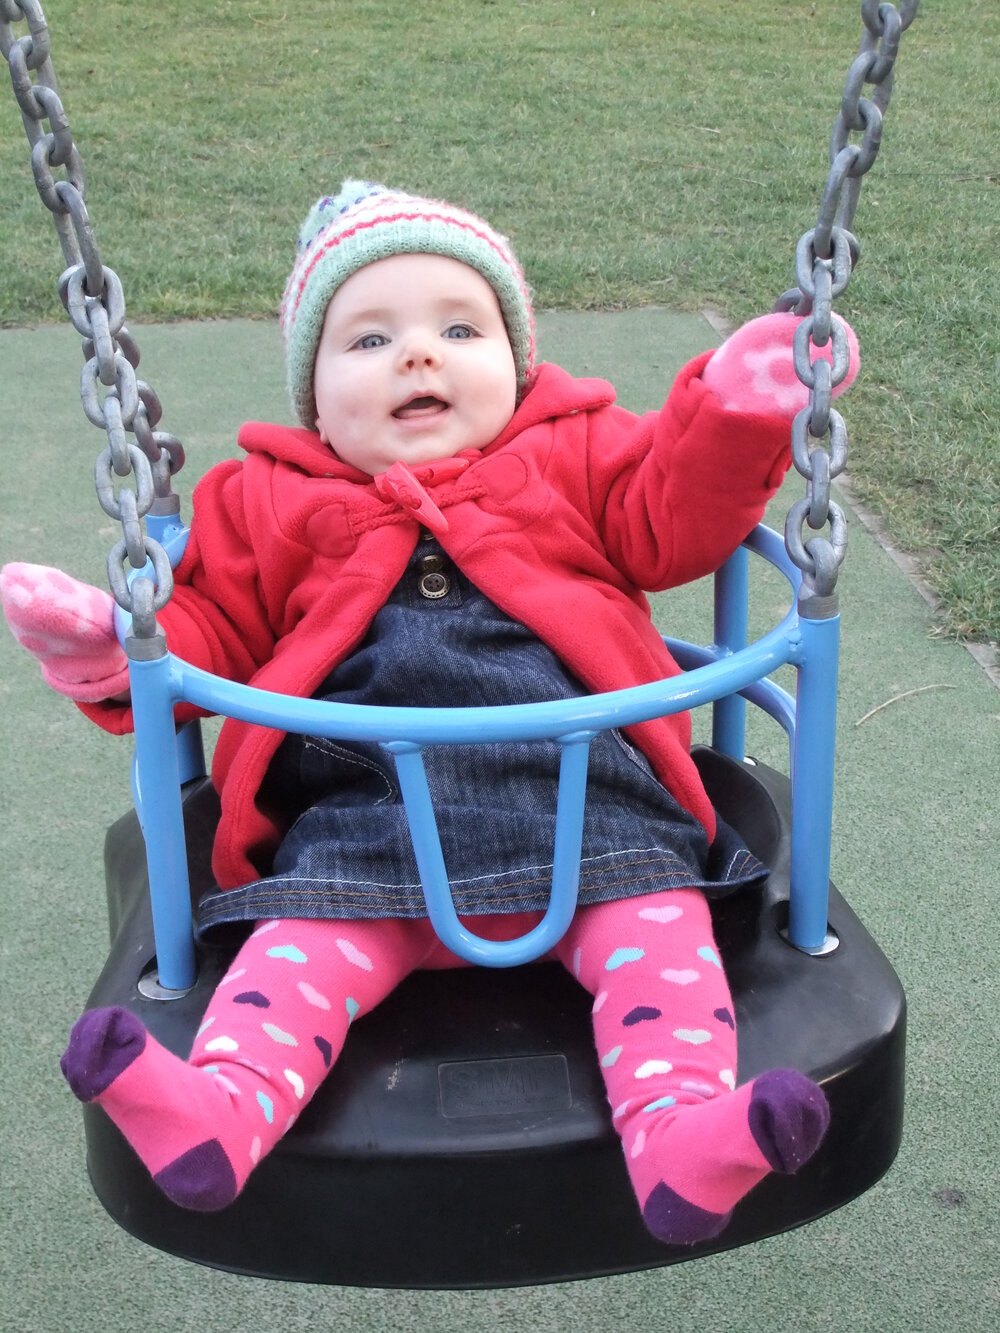 Walk tonbridge - park life - baby swings.JPEG